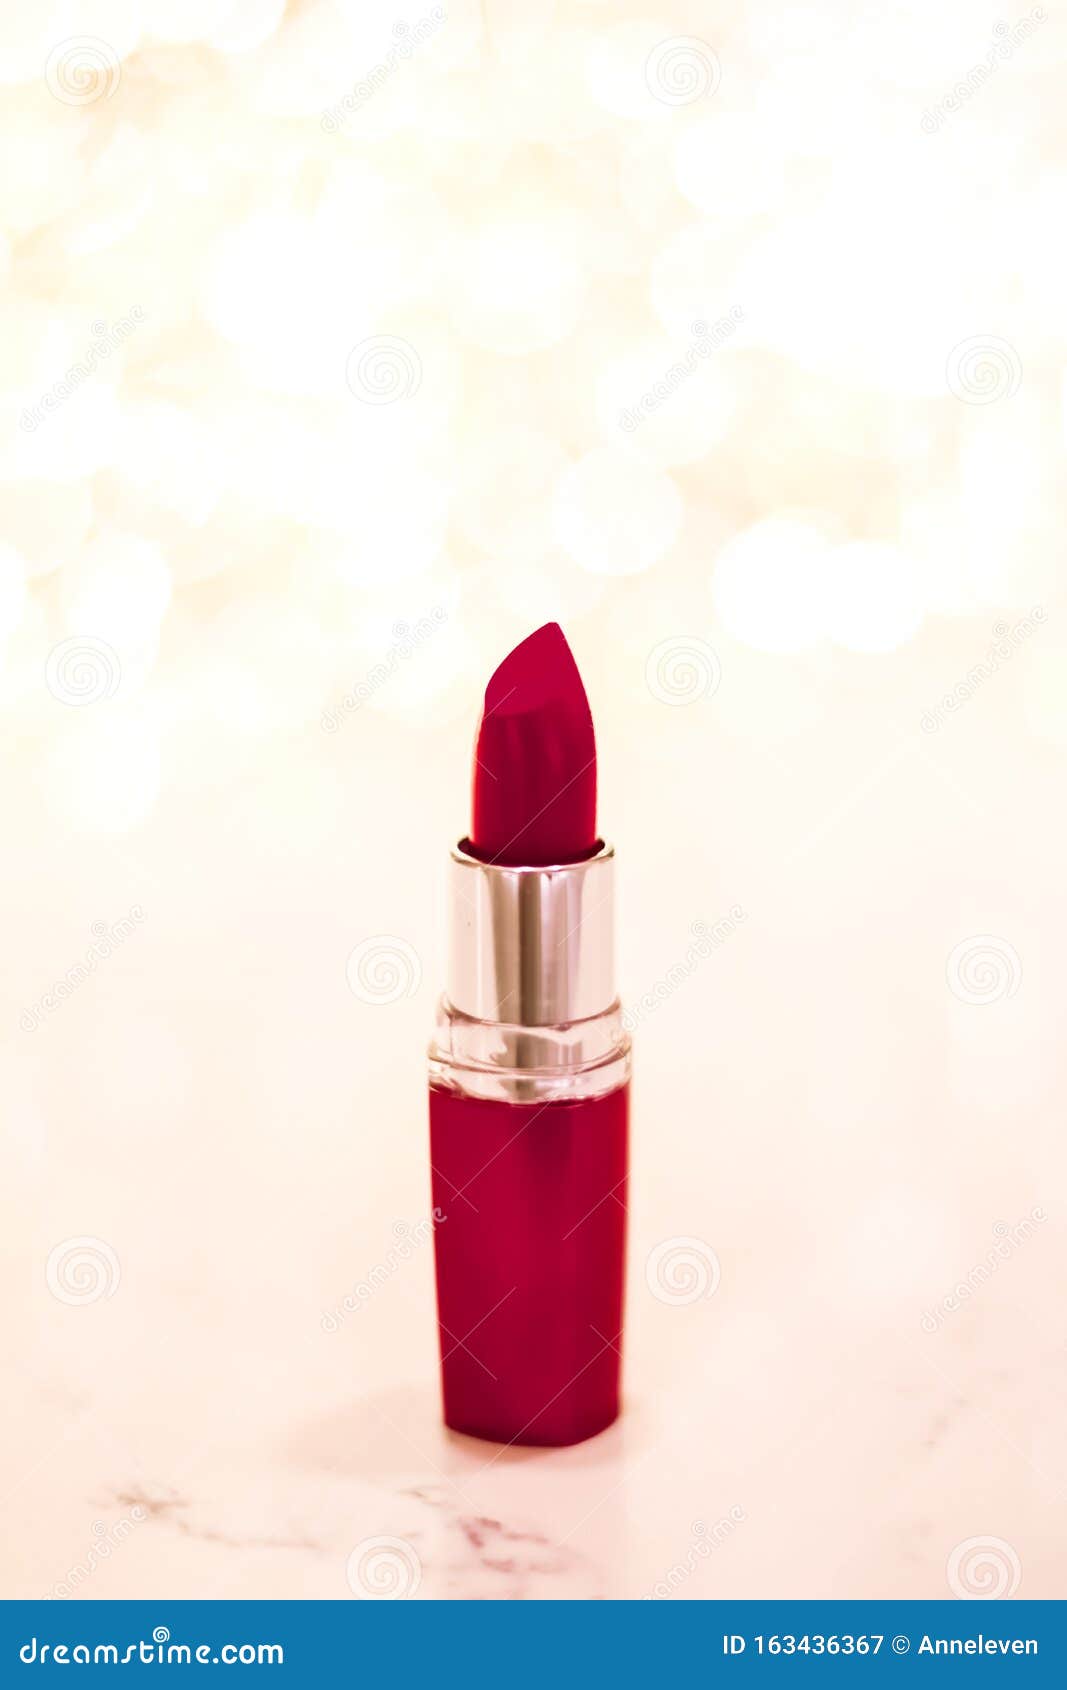 130 Dunkelroter Lippenstift Fotos Kostenlose Und Royalty Free Stock Fotos Von Dreamstime